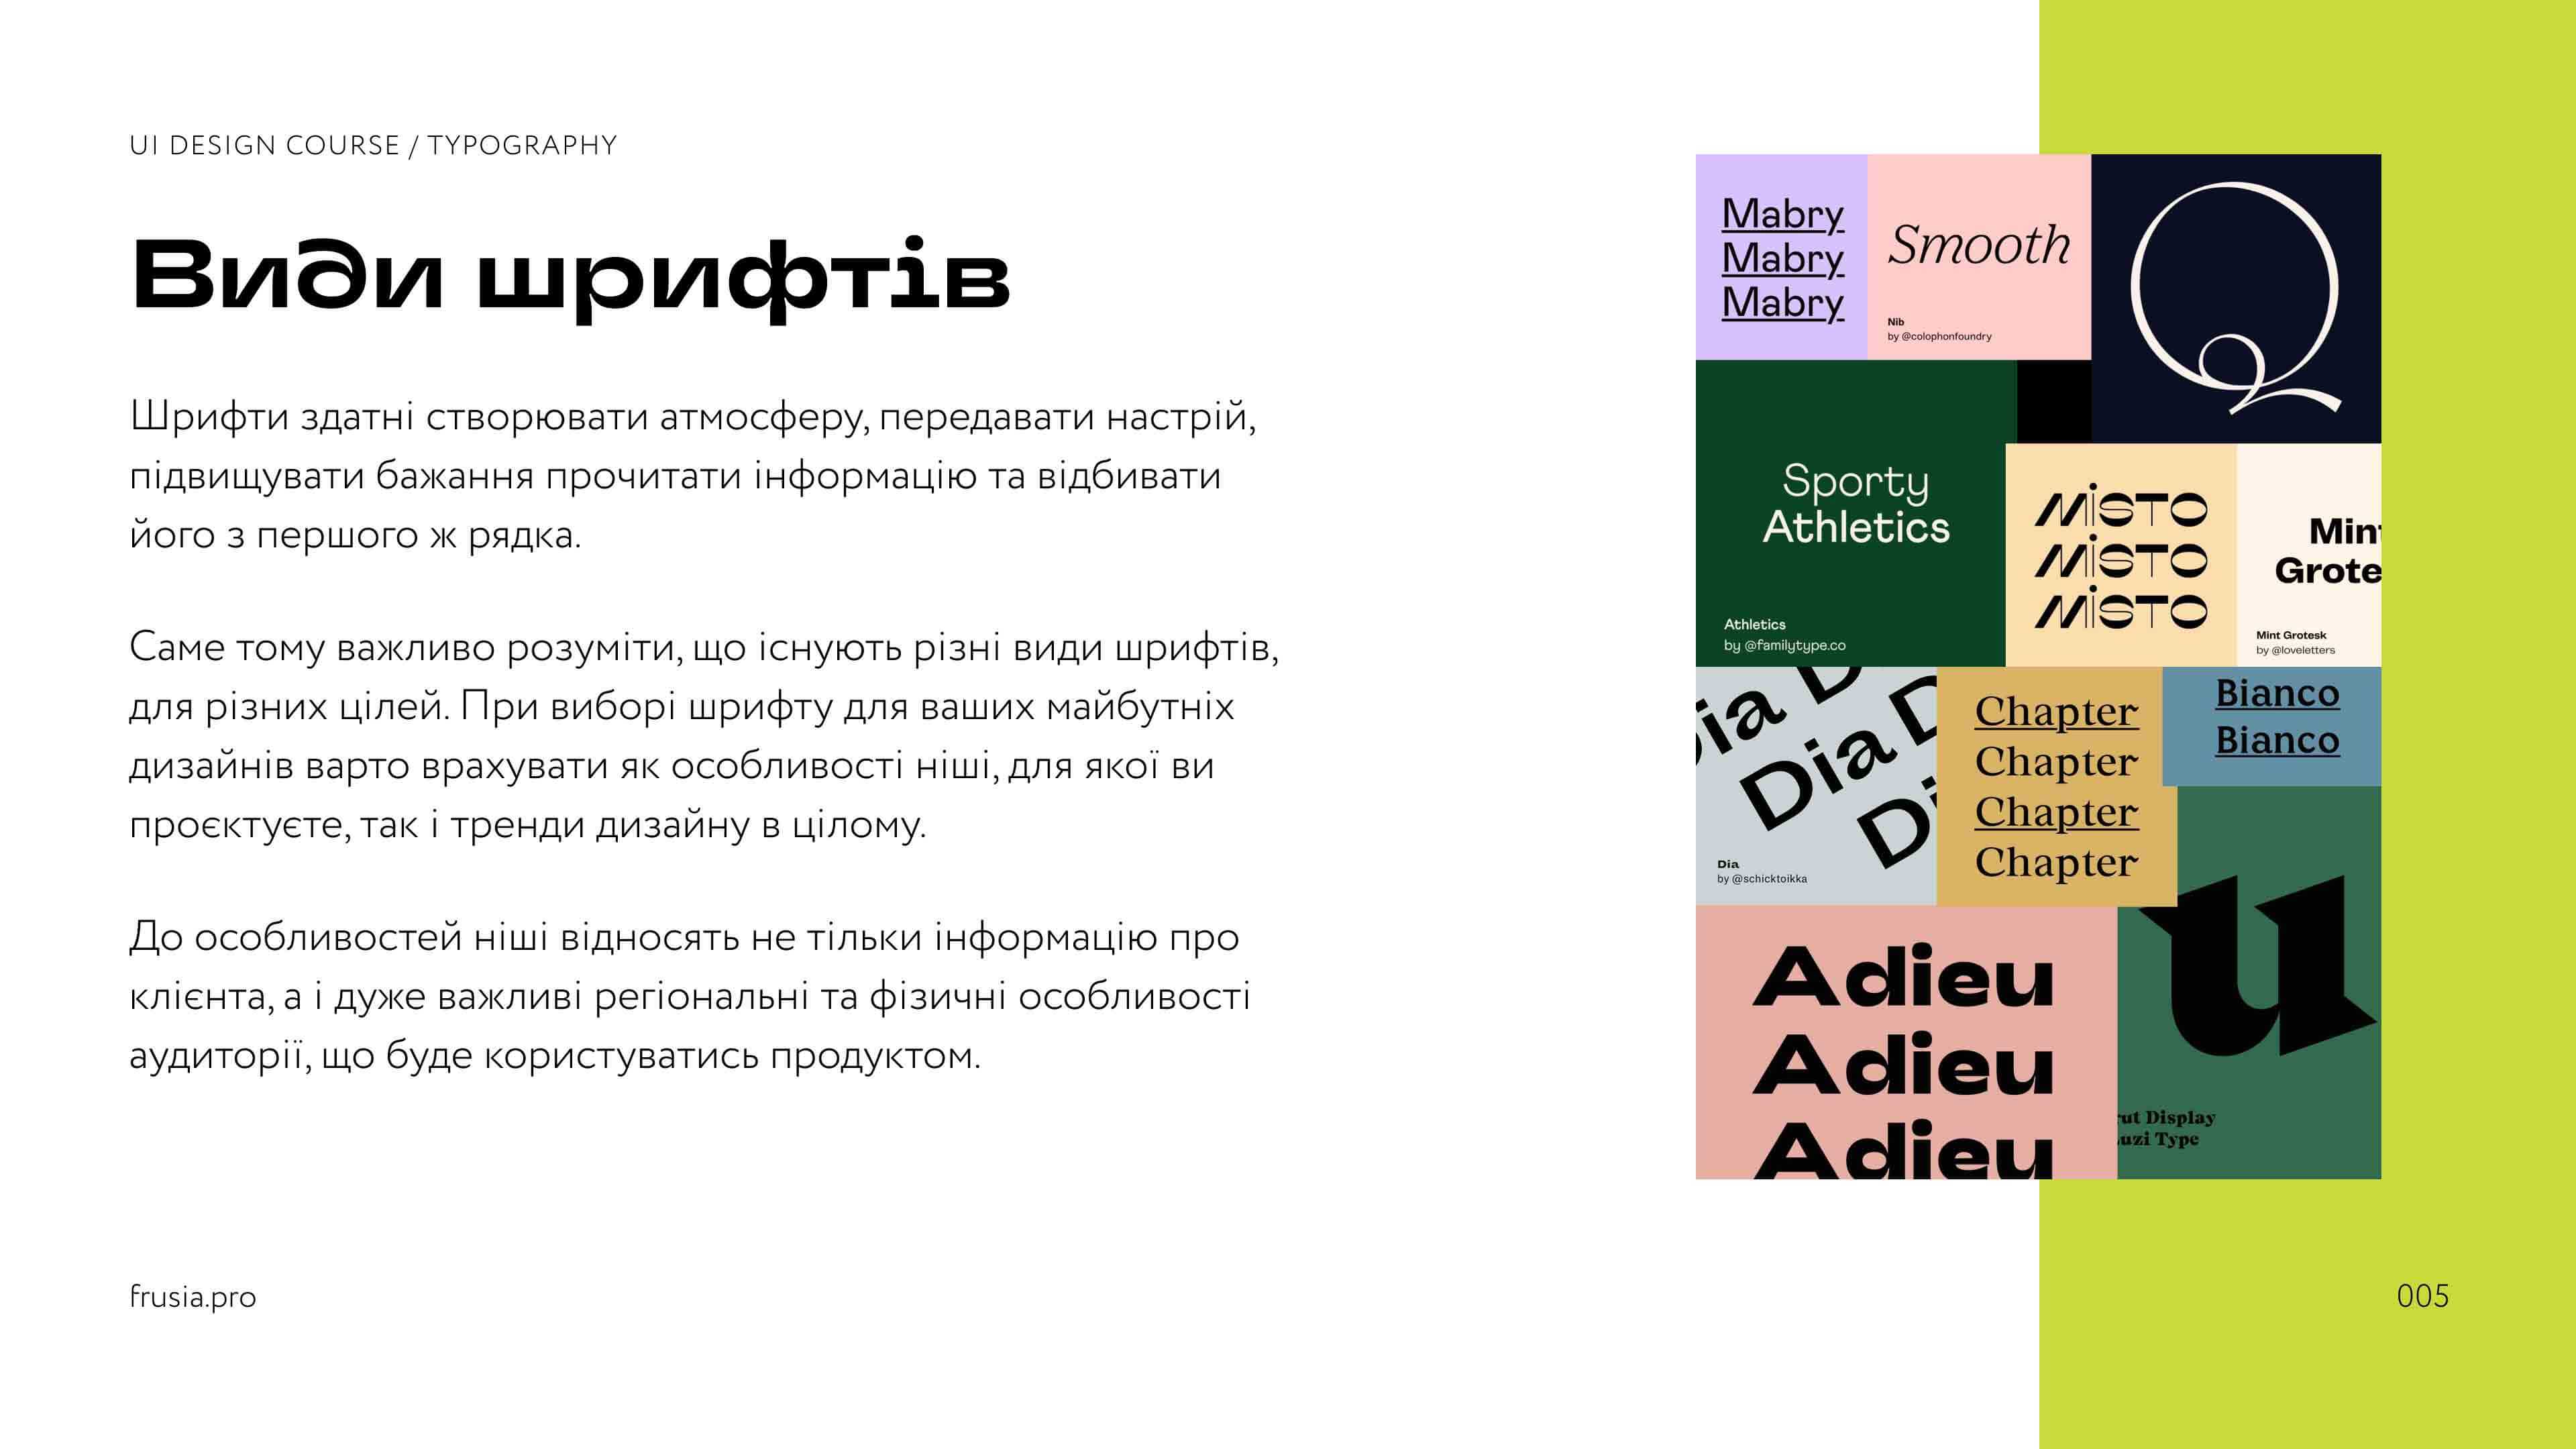 Гайд з типографіки для UI дизайнерів